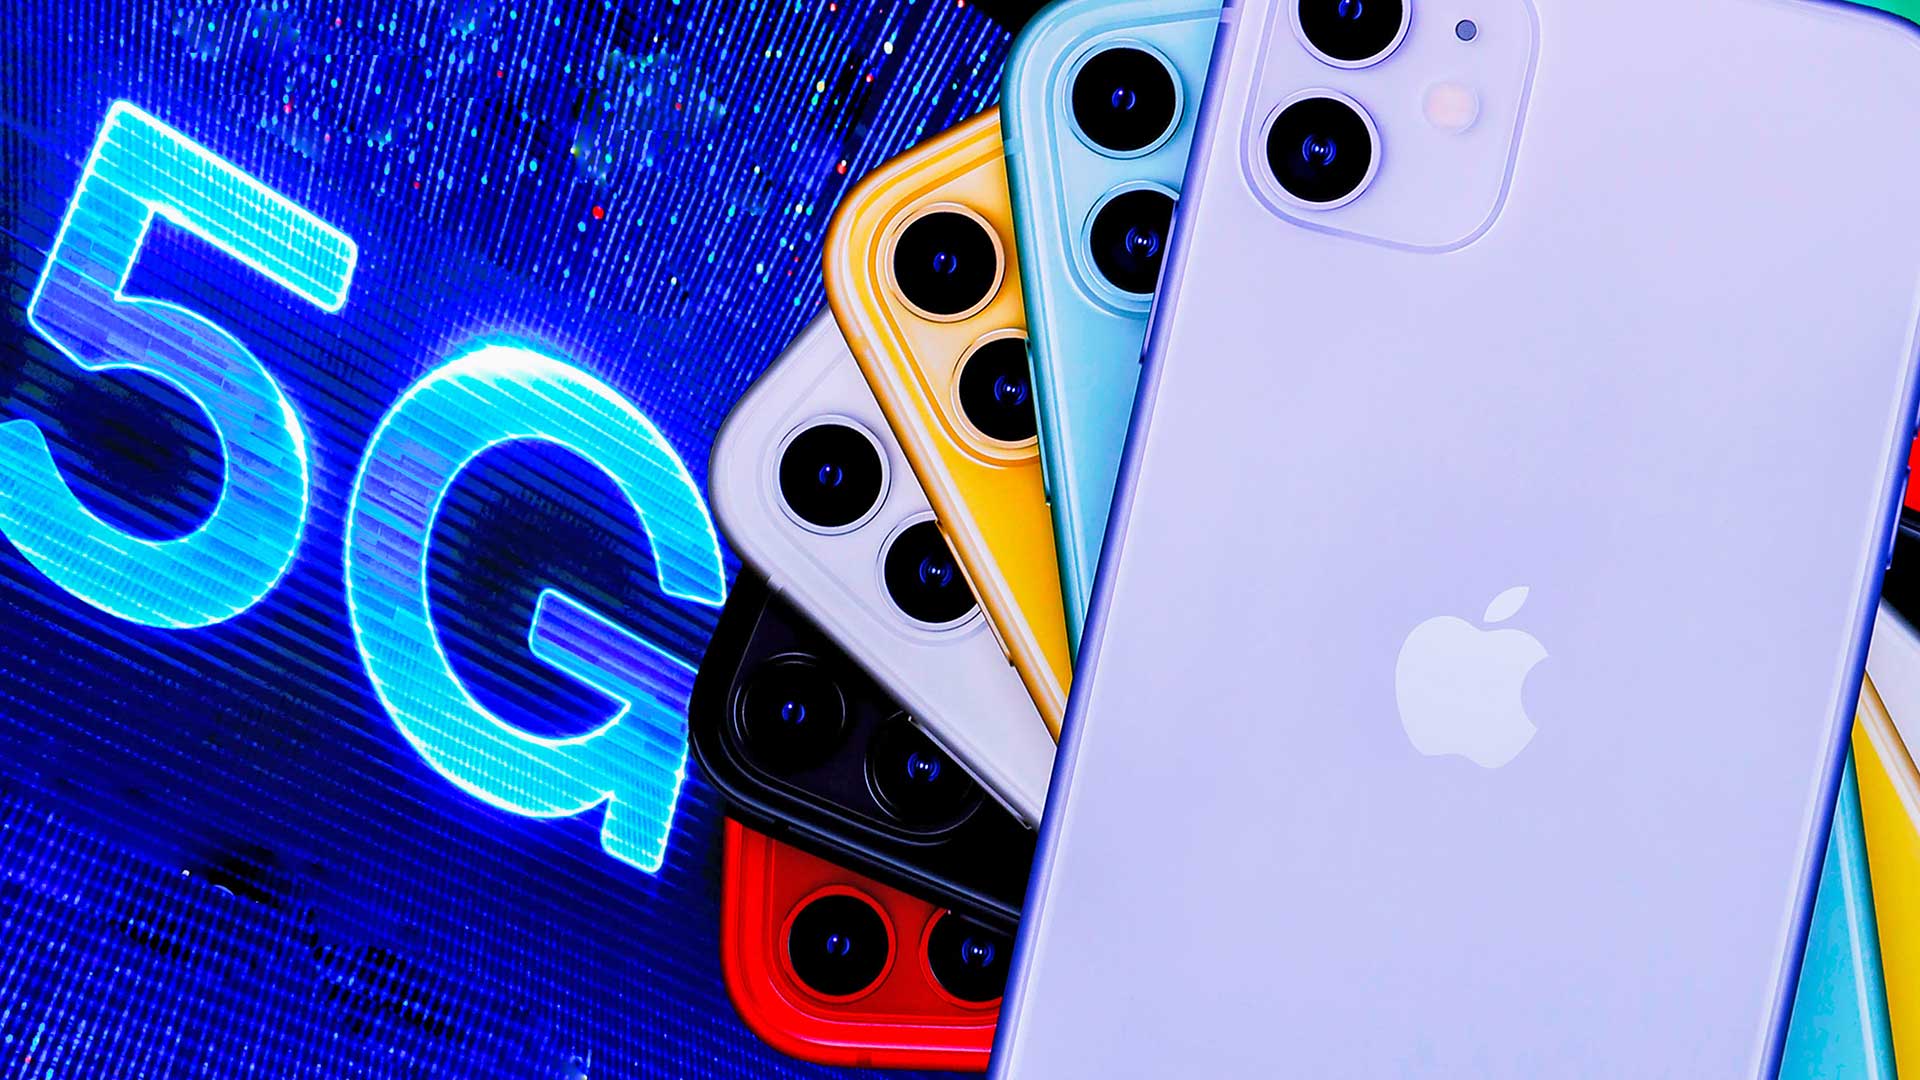 آیفون 5G اپل با چیپست ۵ نانومتری و مودم X55 کوالکام عرضه خواهد شد